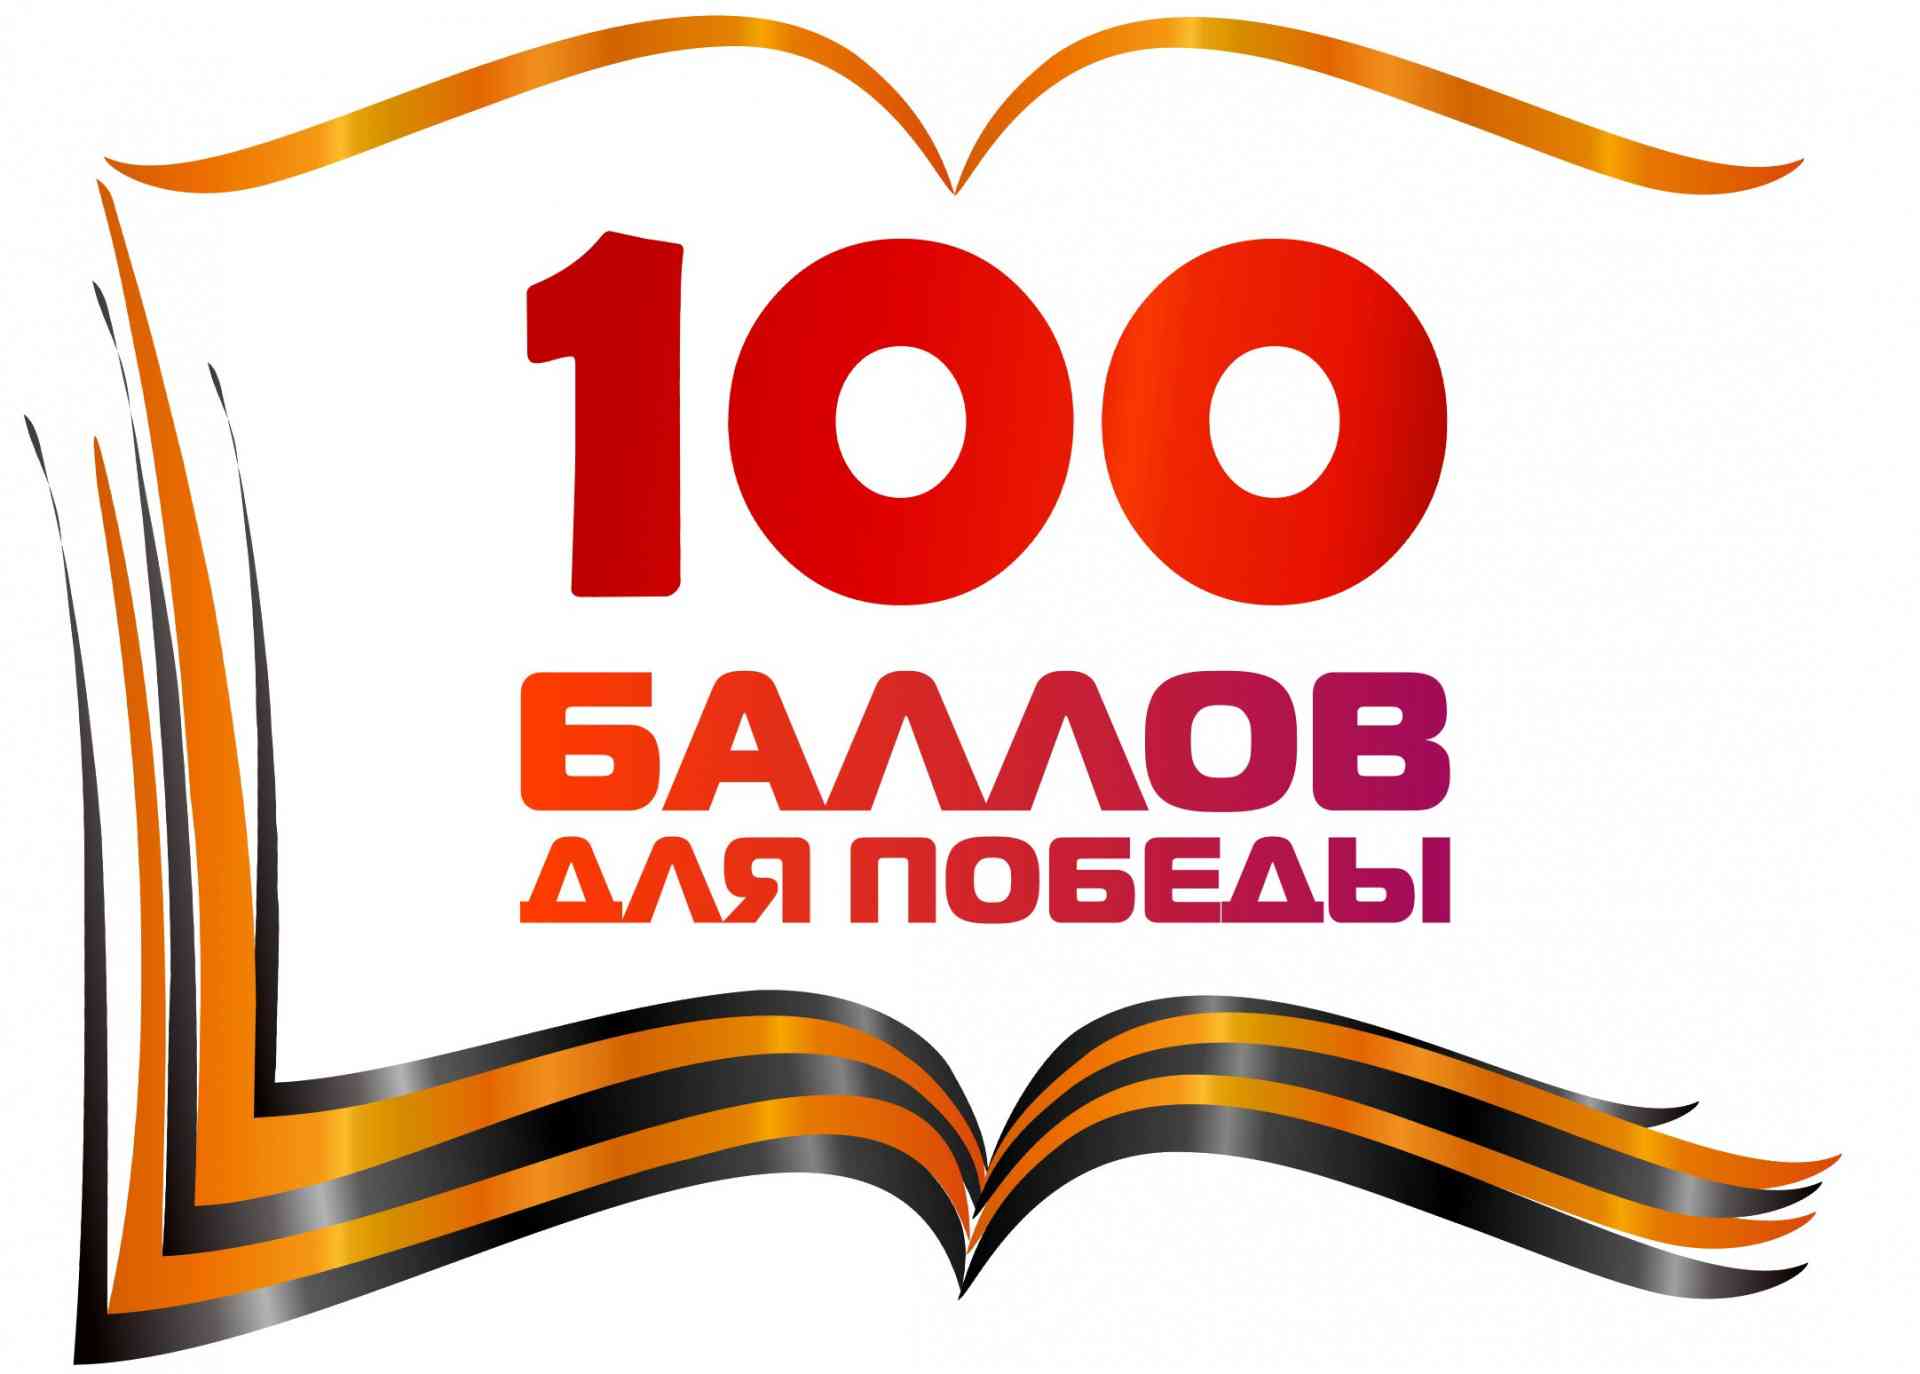 Мичуринск присоединился к акции "100 баллов для победы"